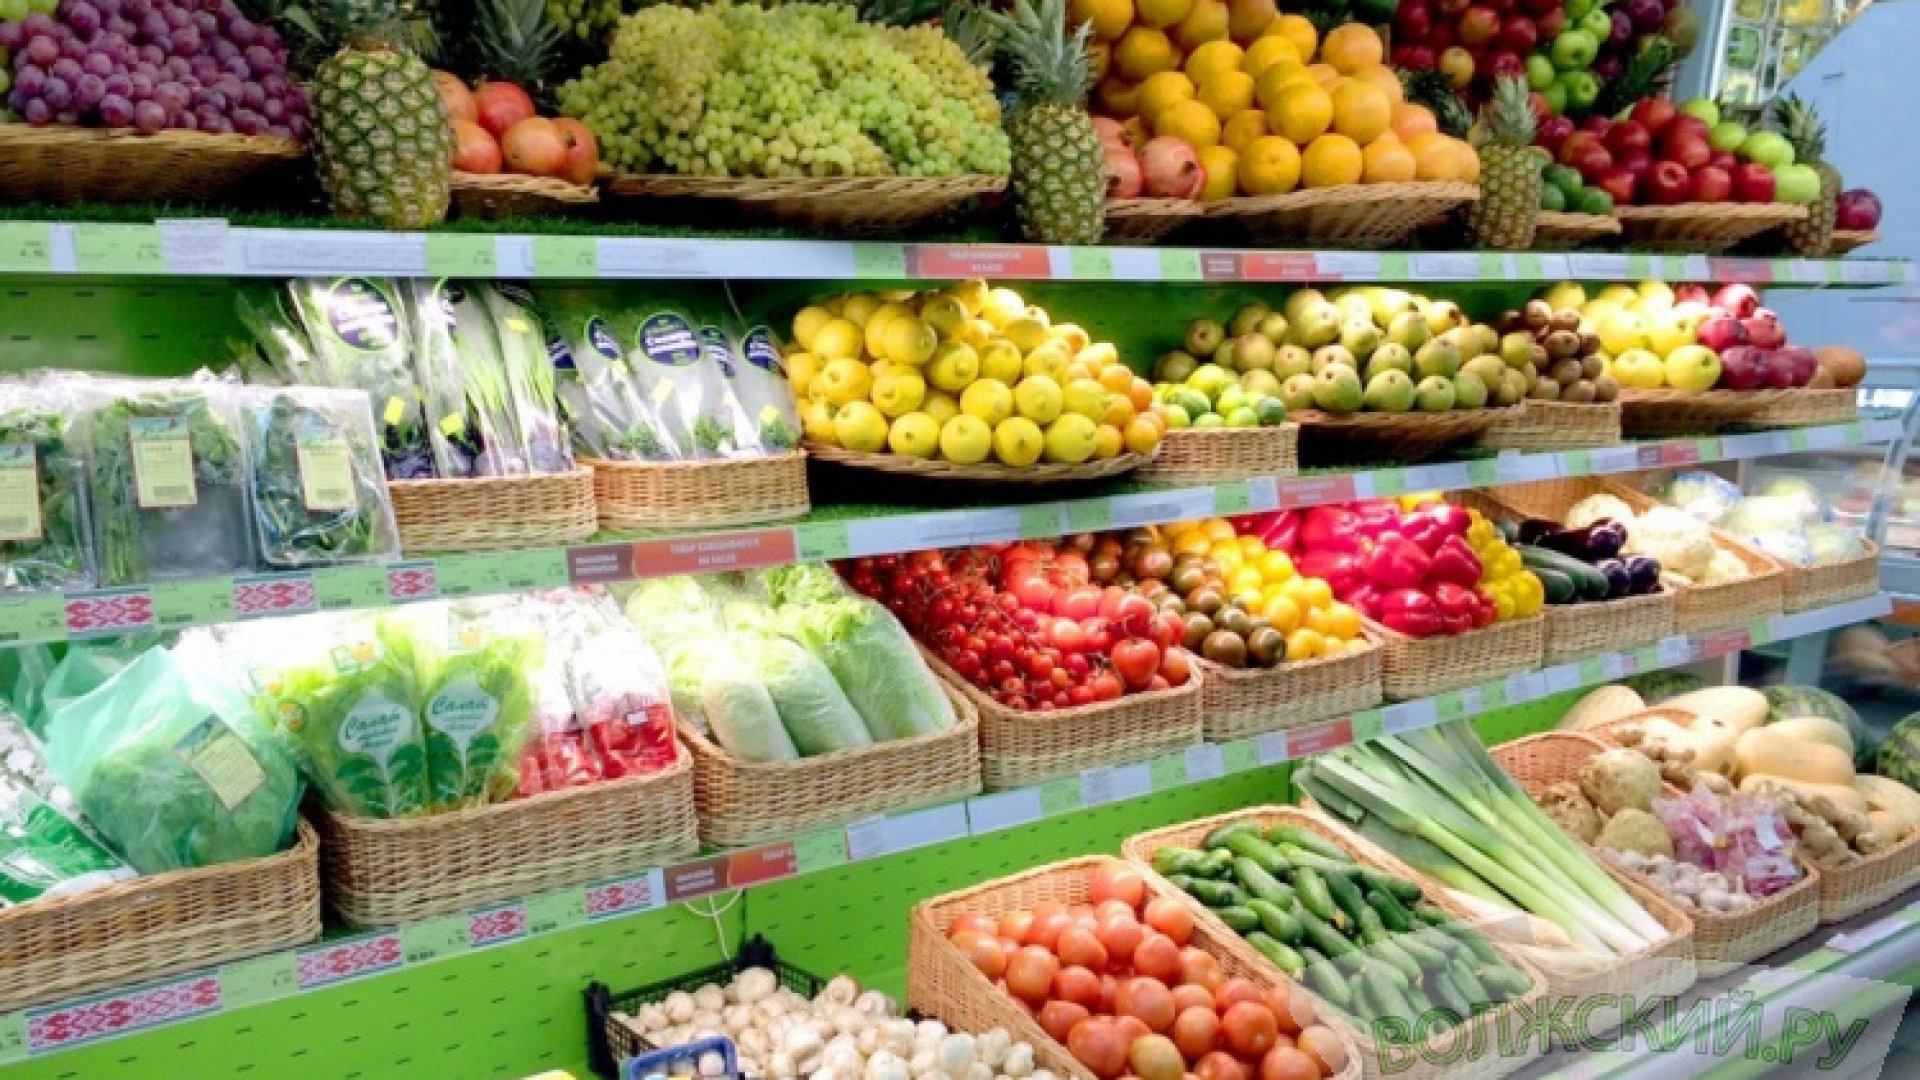 Плодовые товары. Выкладка овощей и фруктов. Овощной прилавок. Овощи на прилавке. Прилавок с овощами и фруктами.